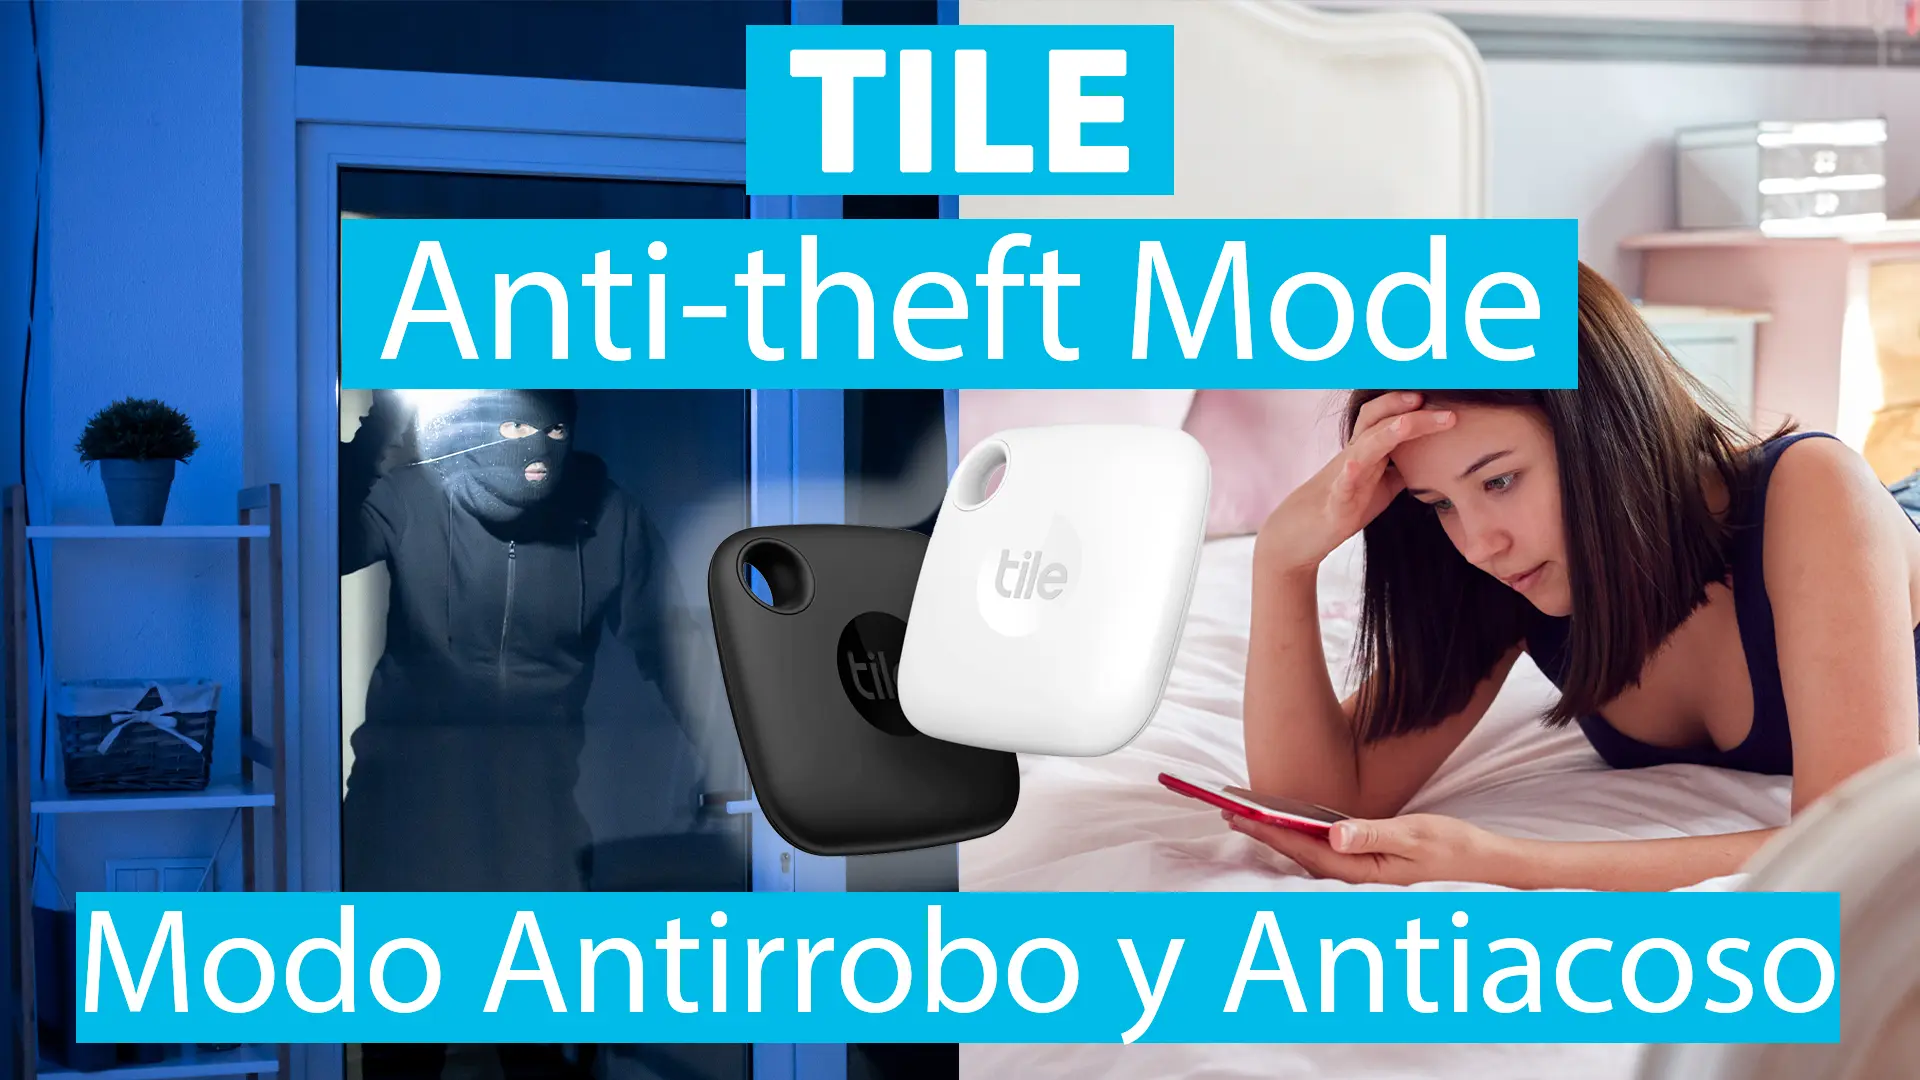 Tile presenta el Modo Antirrobo Anti-theft Mode que ya combate el acoso y el robo